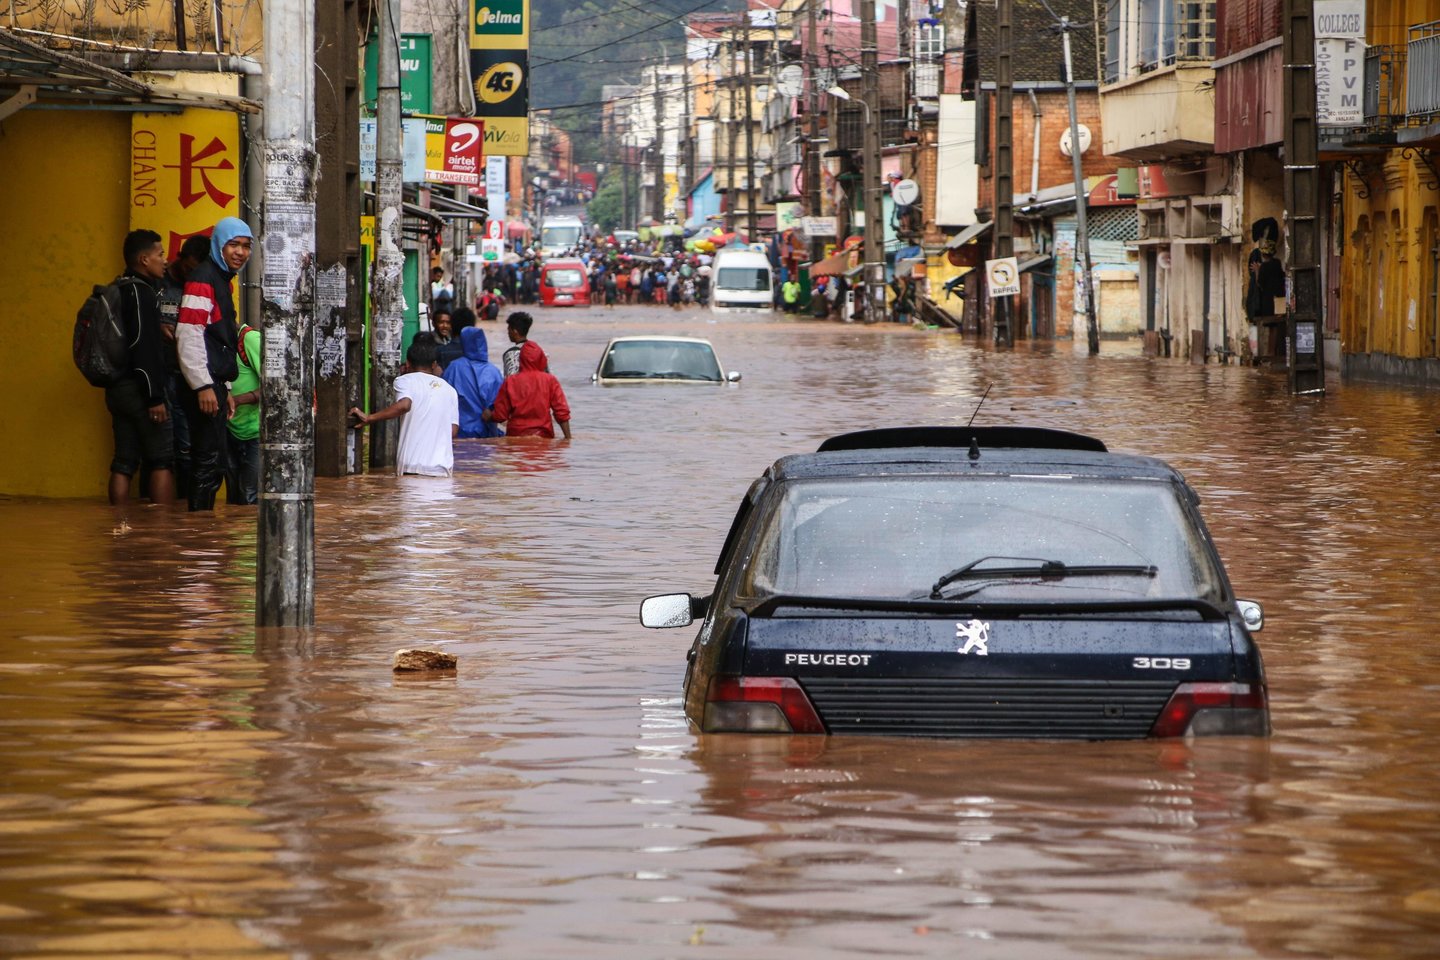 Ketvirtadienį paskelbtoje ataskaitoje teigiama, kad karščio bangos, potvyniai ir kiti ekstremalūs gamtos reiškiniai per pastaruosius 40 metų Europoje nusinešė 142 000 gyvybių ir kainavo daugiau nei 500 milijardų eurų.<br>AFP/Scanpix asociatyvi nuotr.